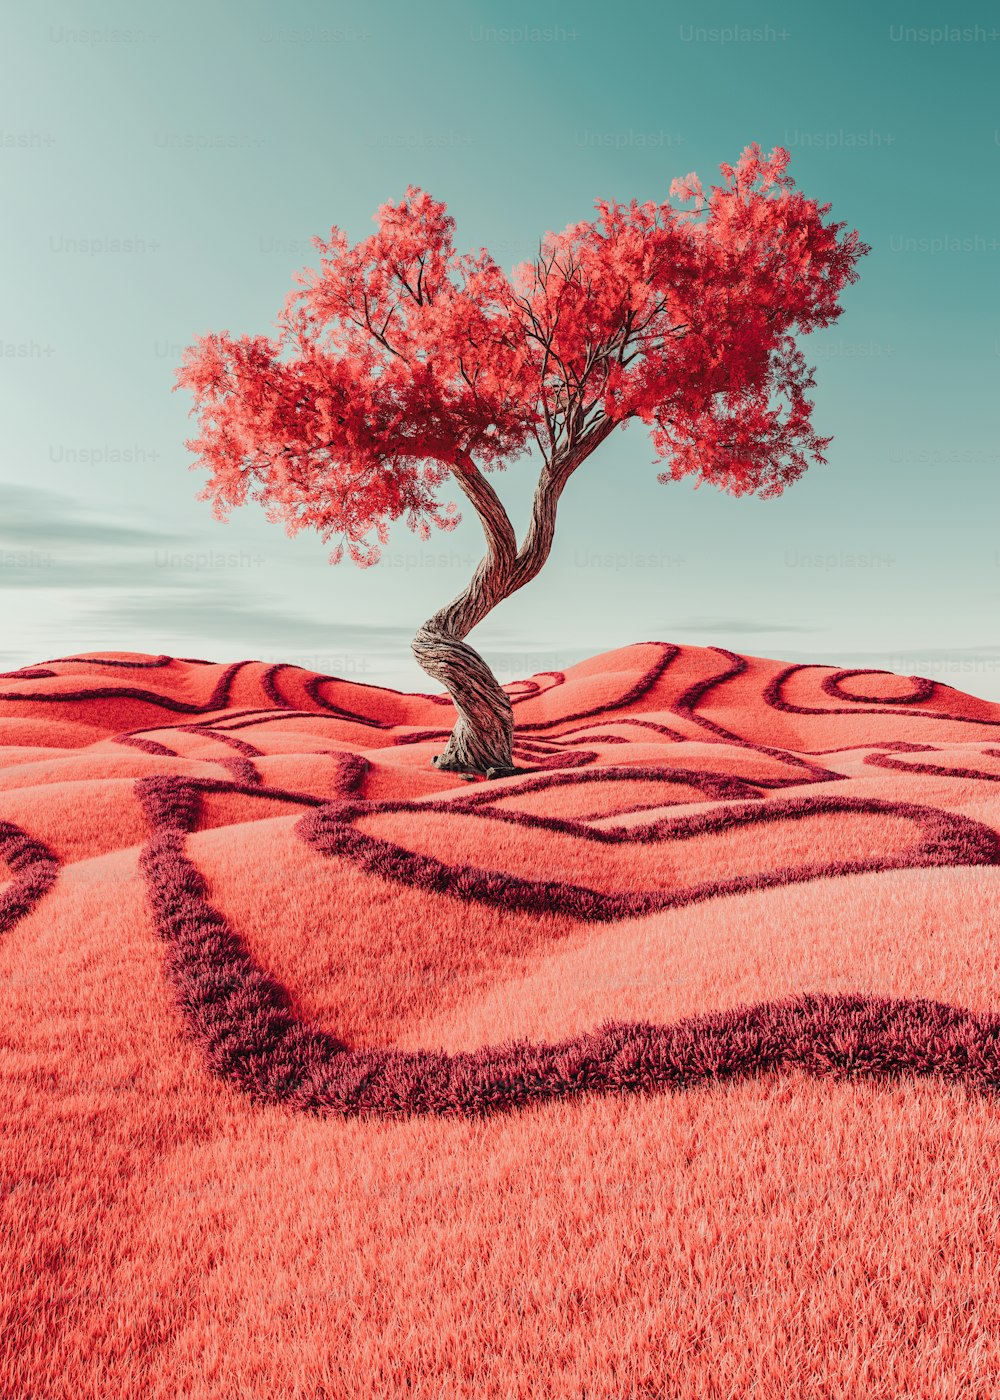 붉은 들판 한가운데에 홀로 서 있는 나무